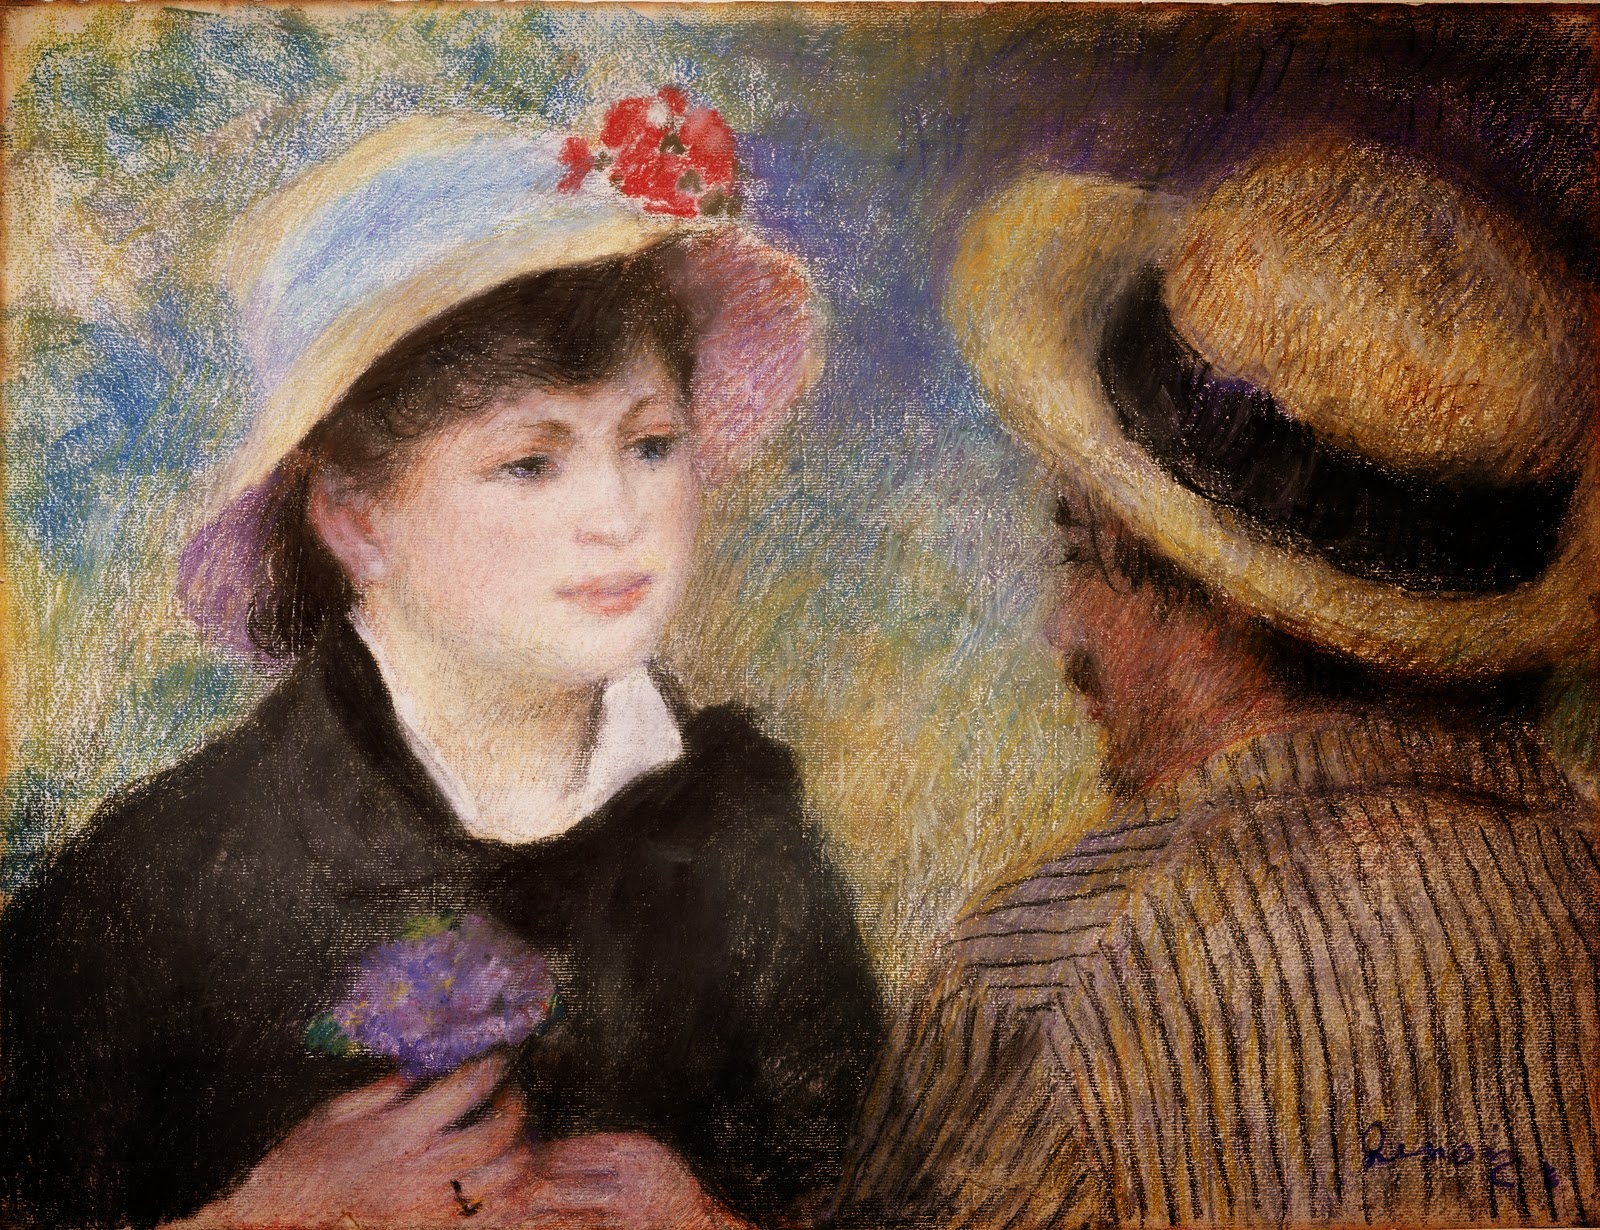 Pierre+Auguste+Renoir-1841-1-19 (251).jpg